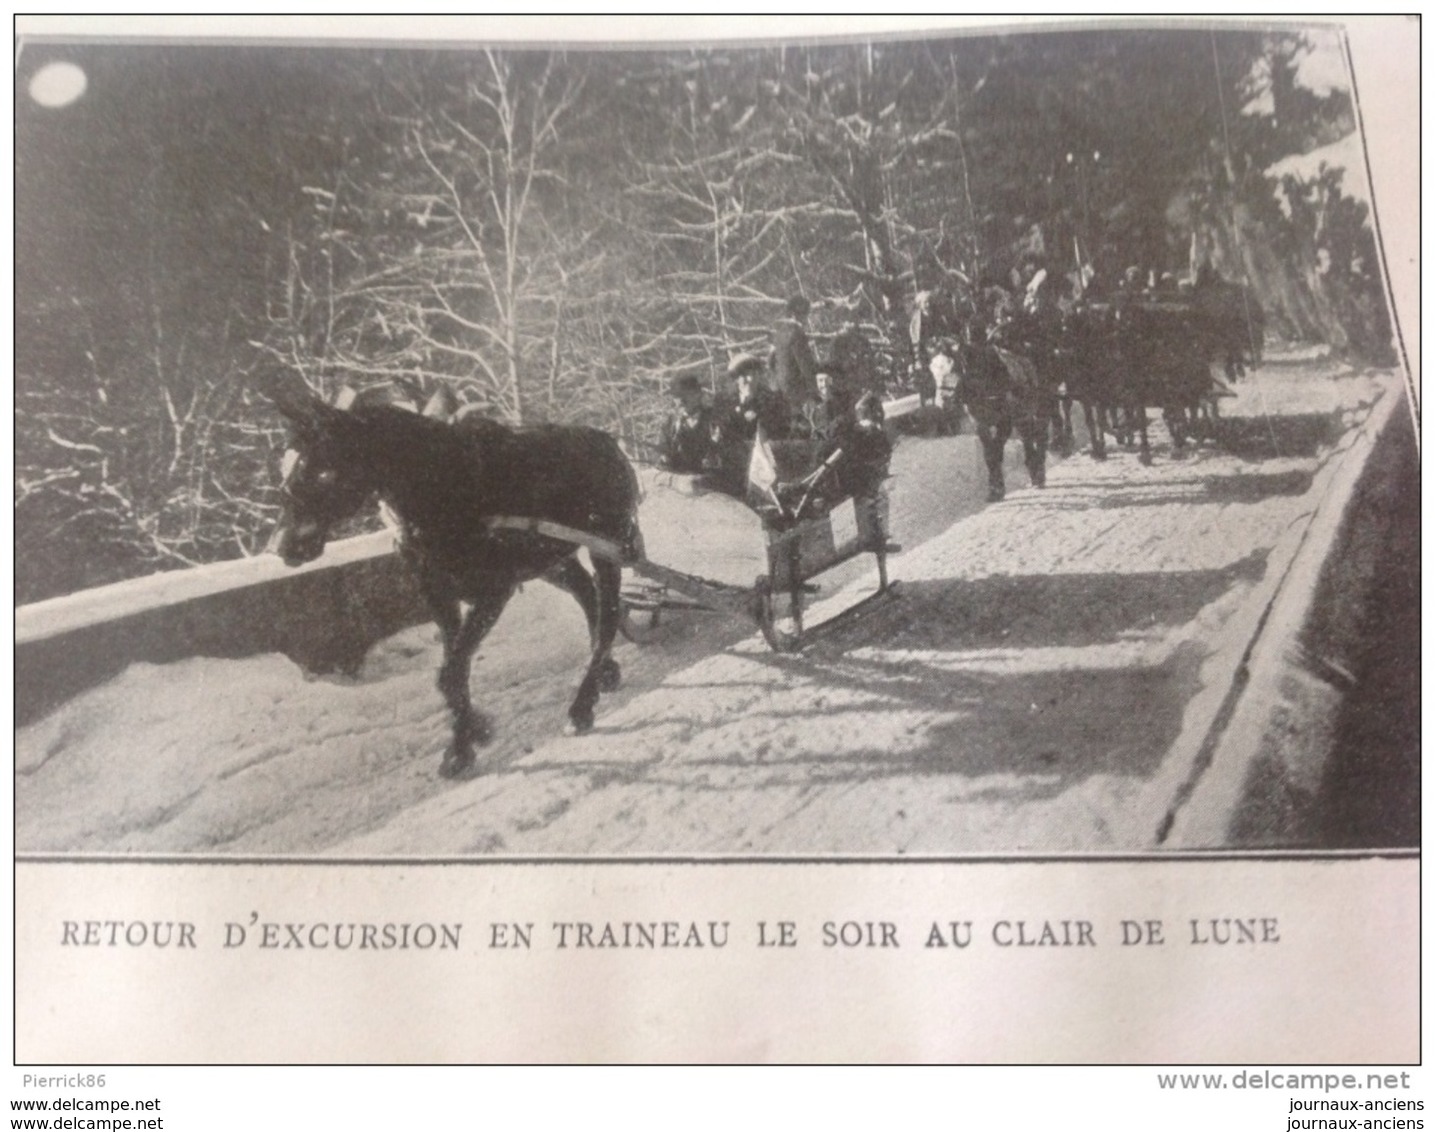 1910 SALLES D'ARMES DE PARIS CERCLE D'ANJOU / SPORTS D'HIVER (PATINAGE MOREZ DU JURA CHAMONIX ETC) / PRIX LEMONNIER